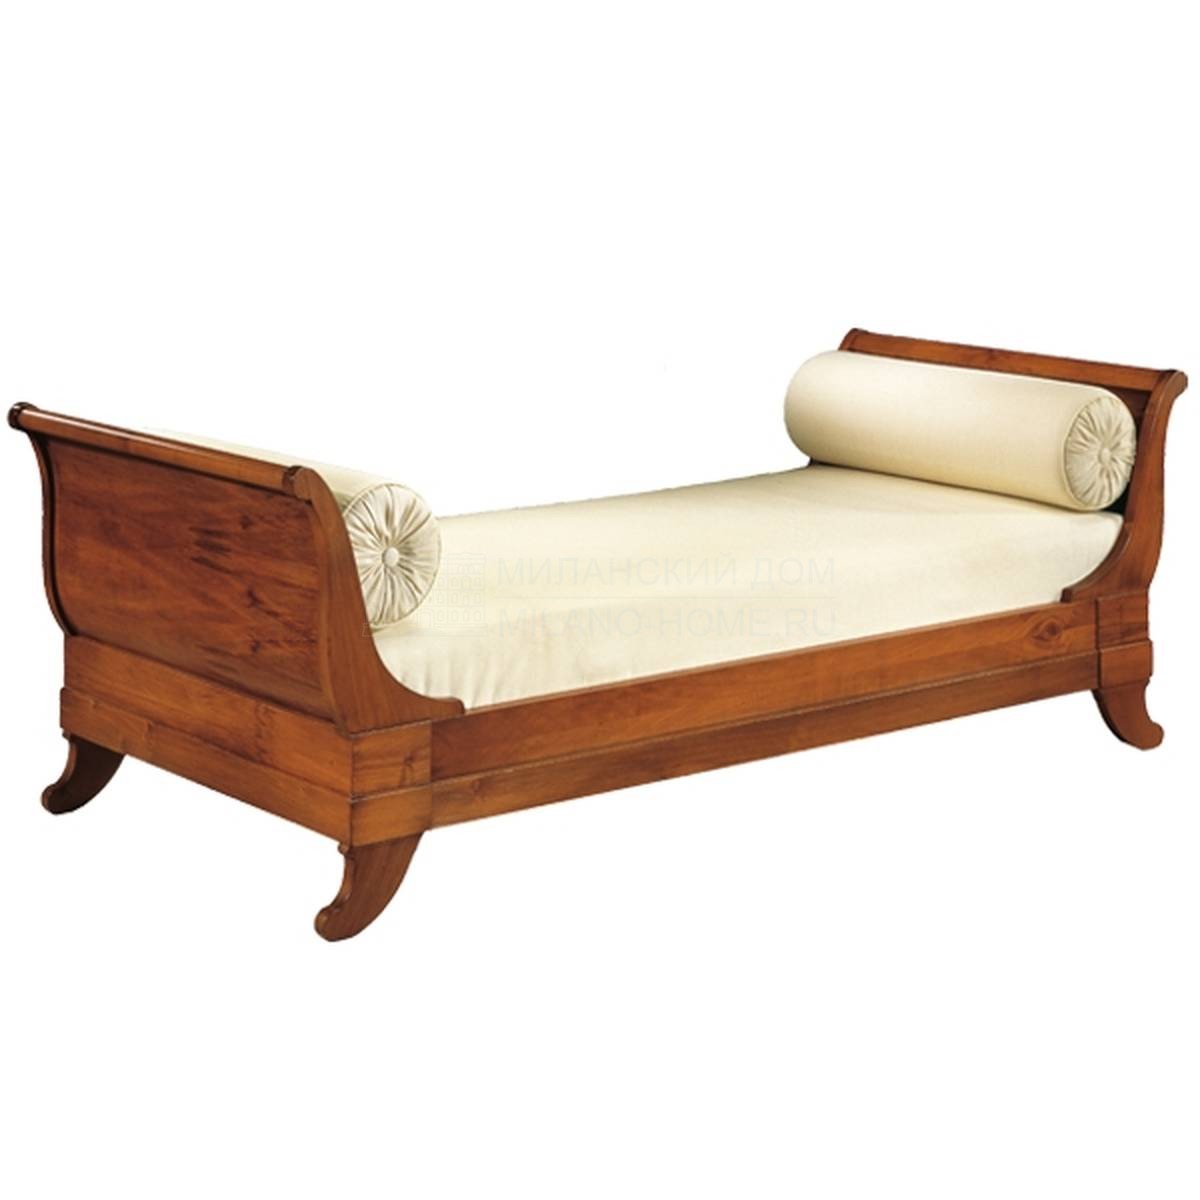 Кровать с деревянным изголовьем Luigi Filippo Art.2816 из Италии фабрики MORELATO